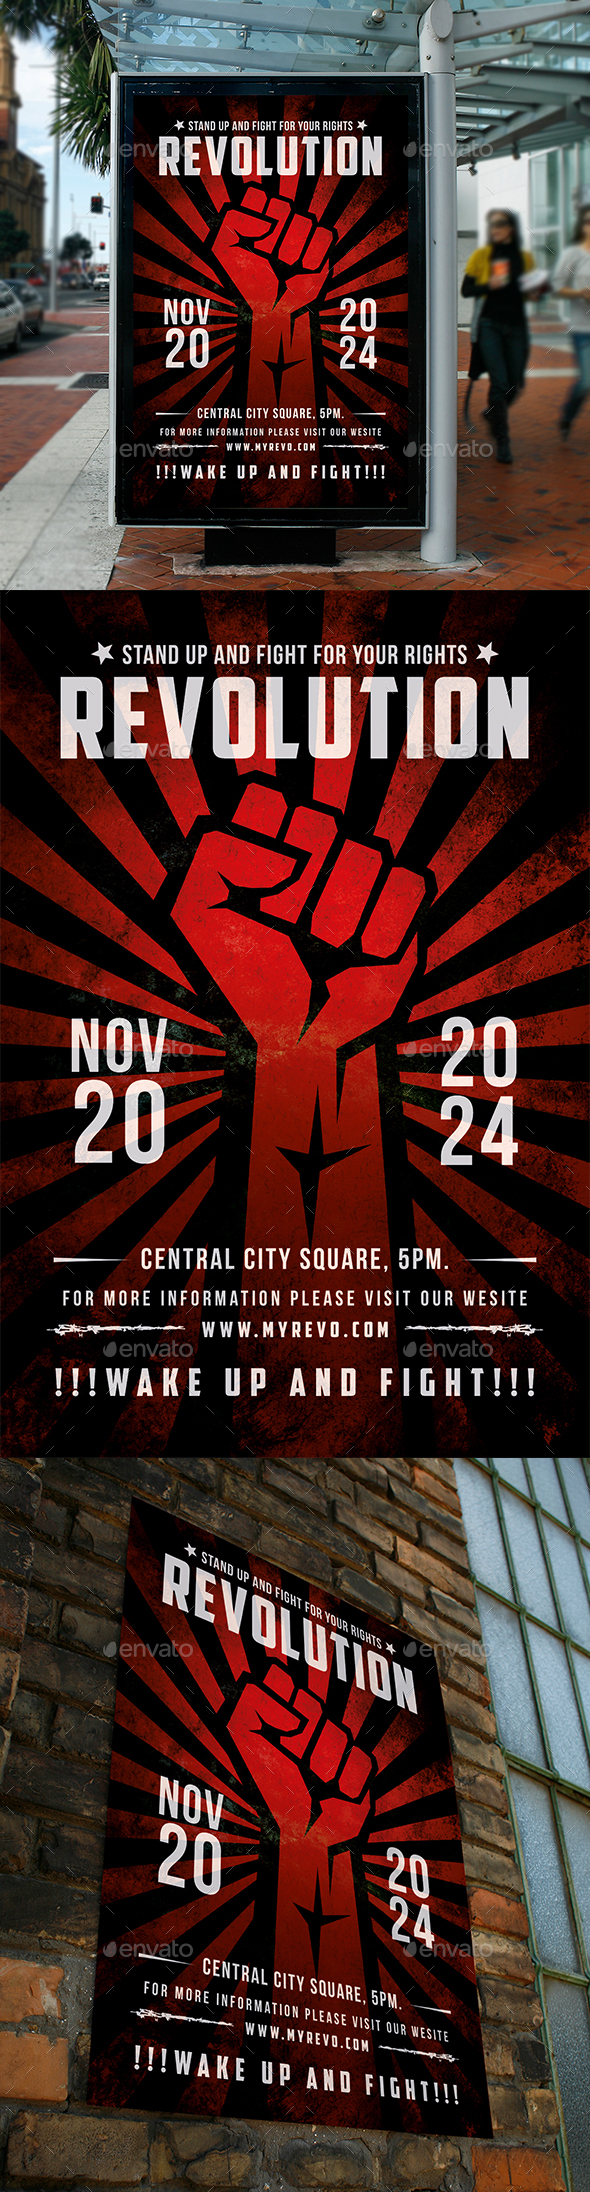 [DOWNLOAD]Revolution Poster Flyer